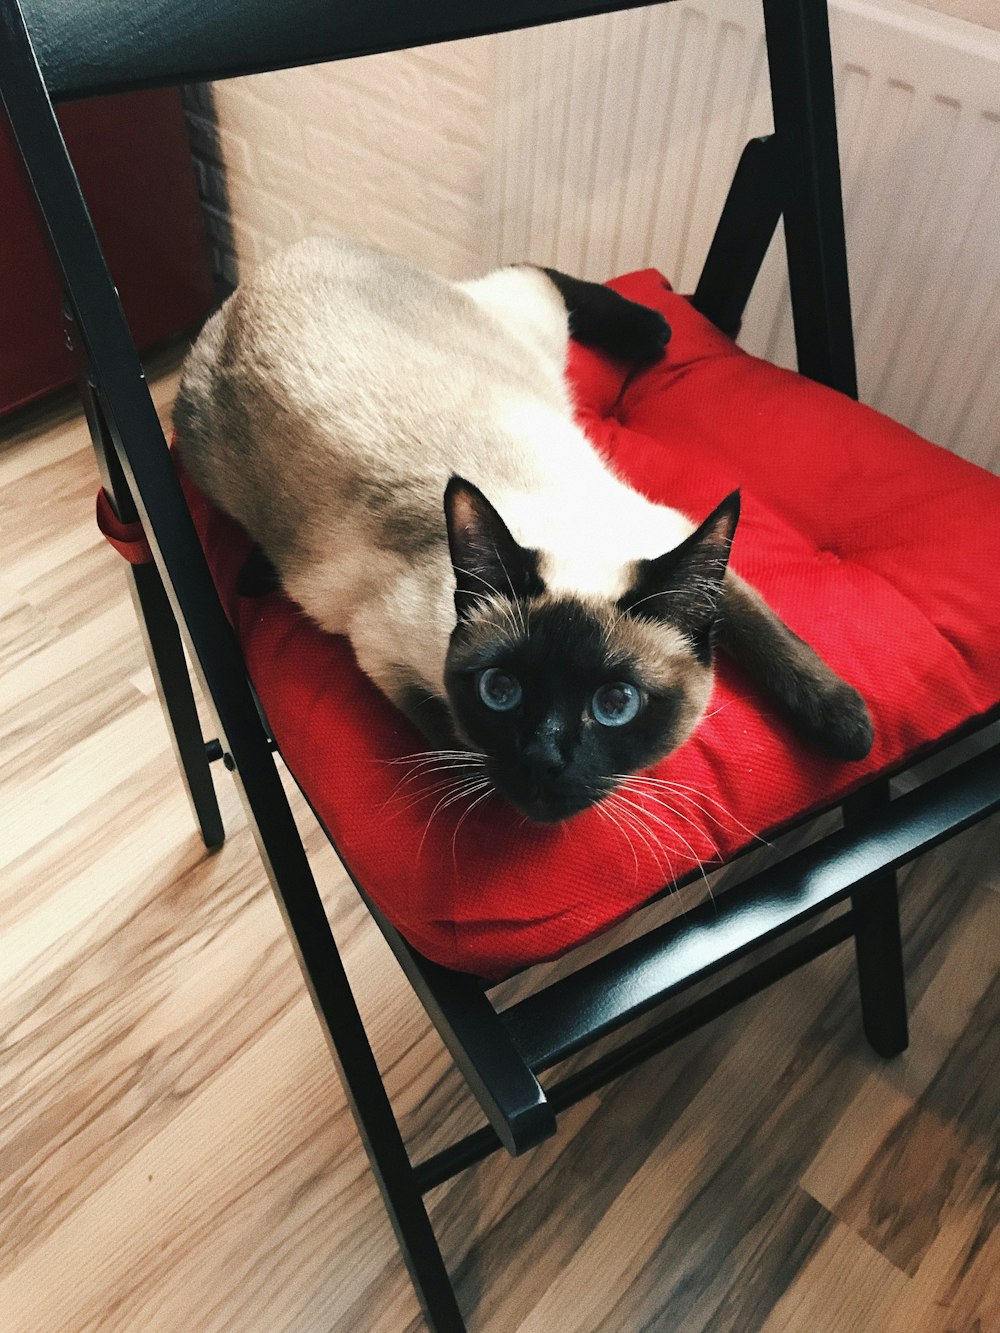 Gato siamés en silla roja y negra